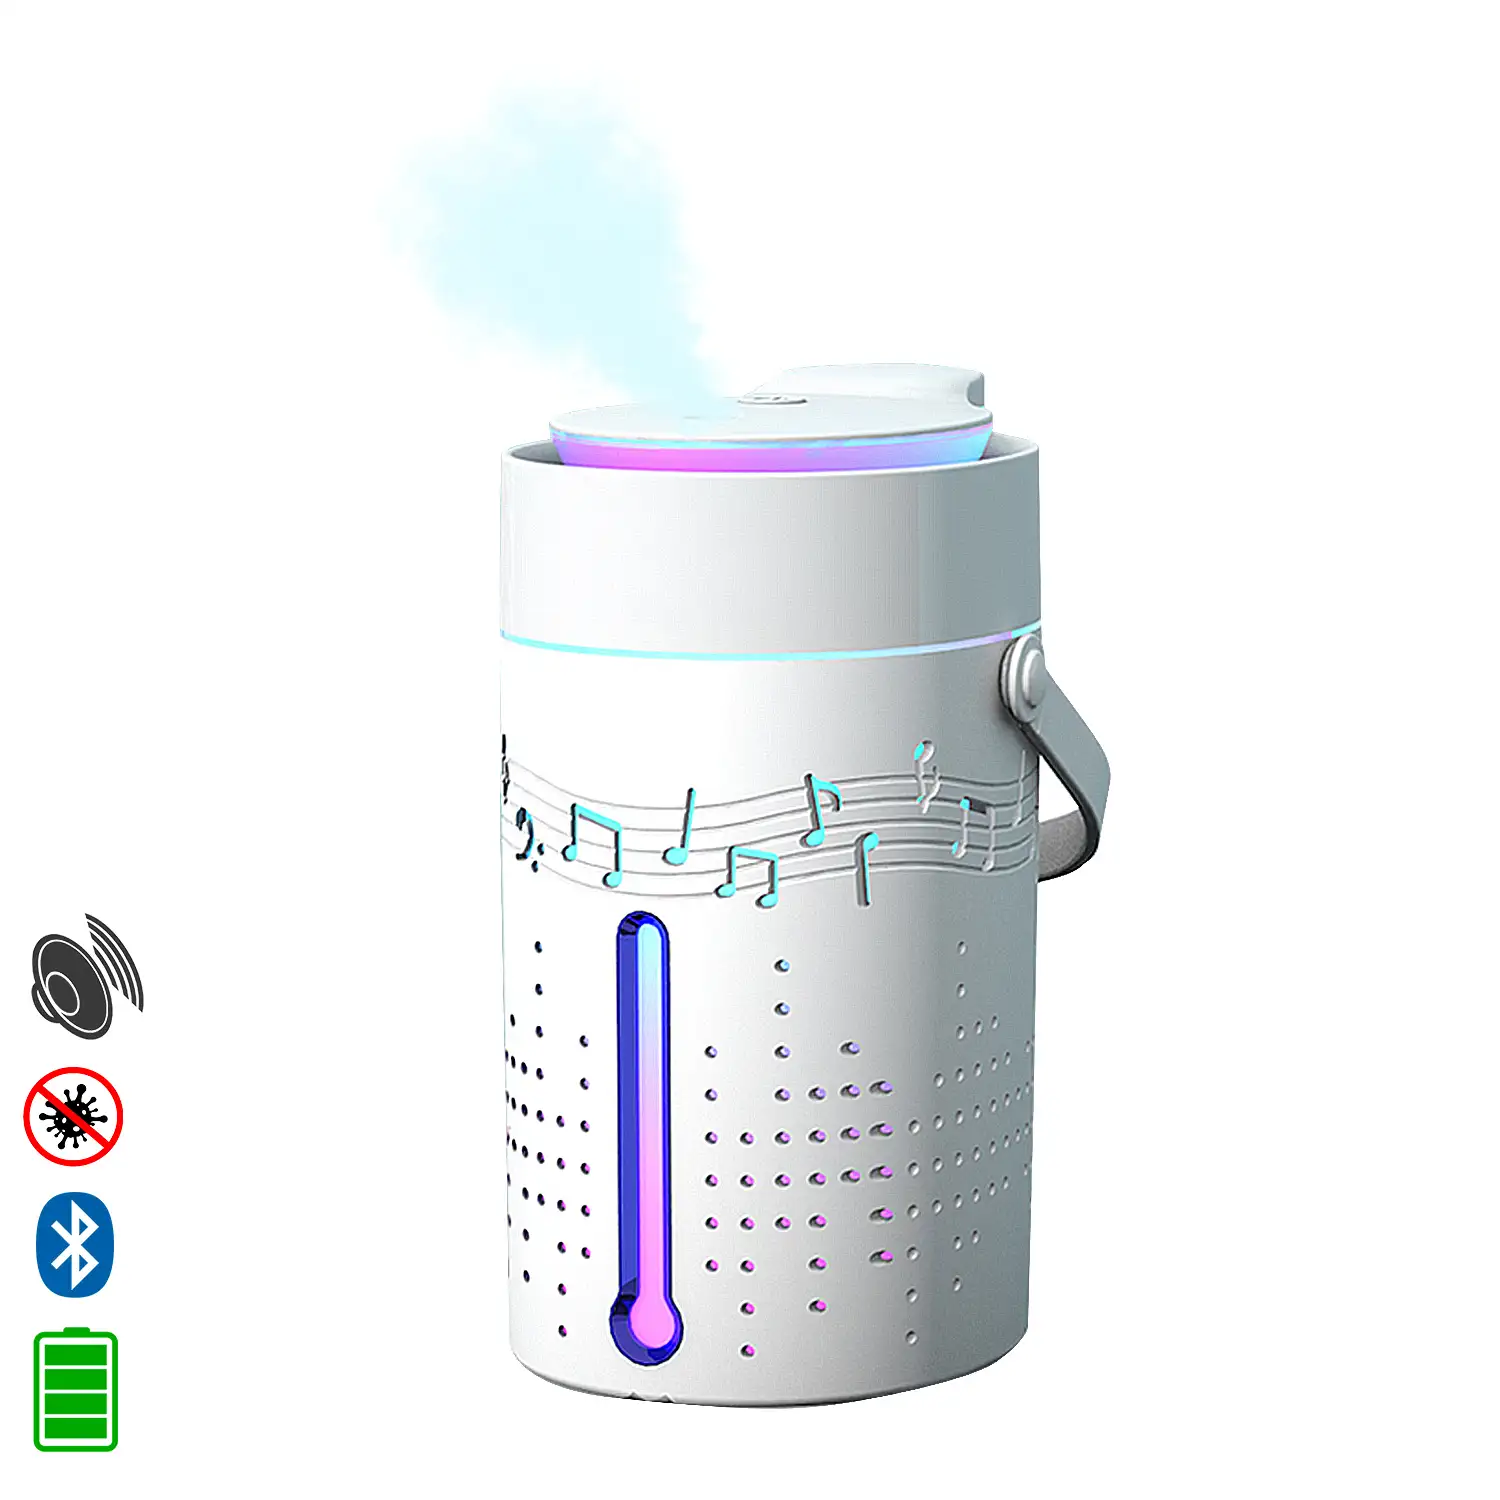 Nebulizador esterilizador multifunción (admite hidroalcohol) 1000 ml. Con altavoz bluetooth incorporado.